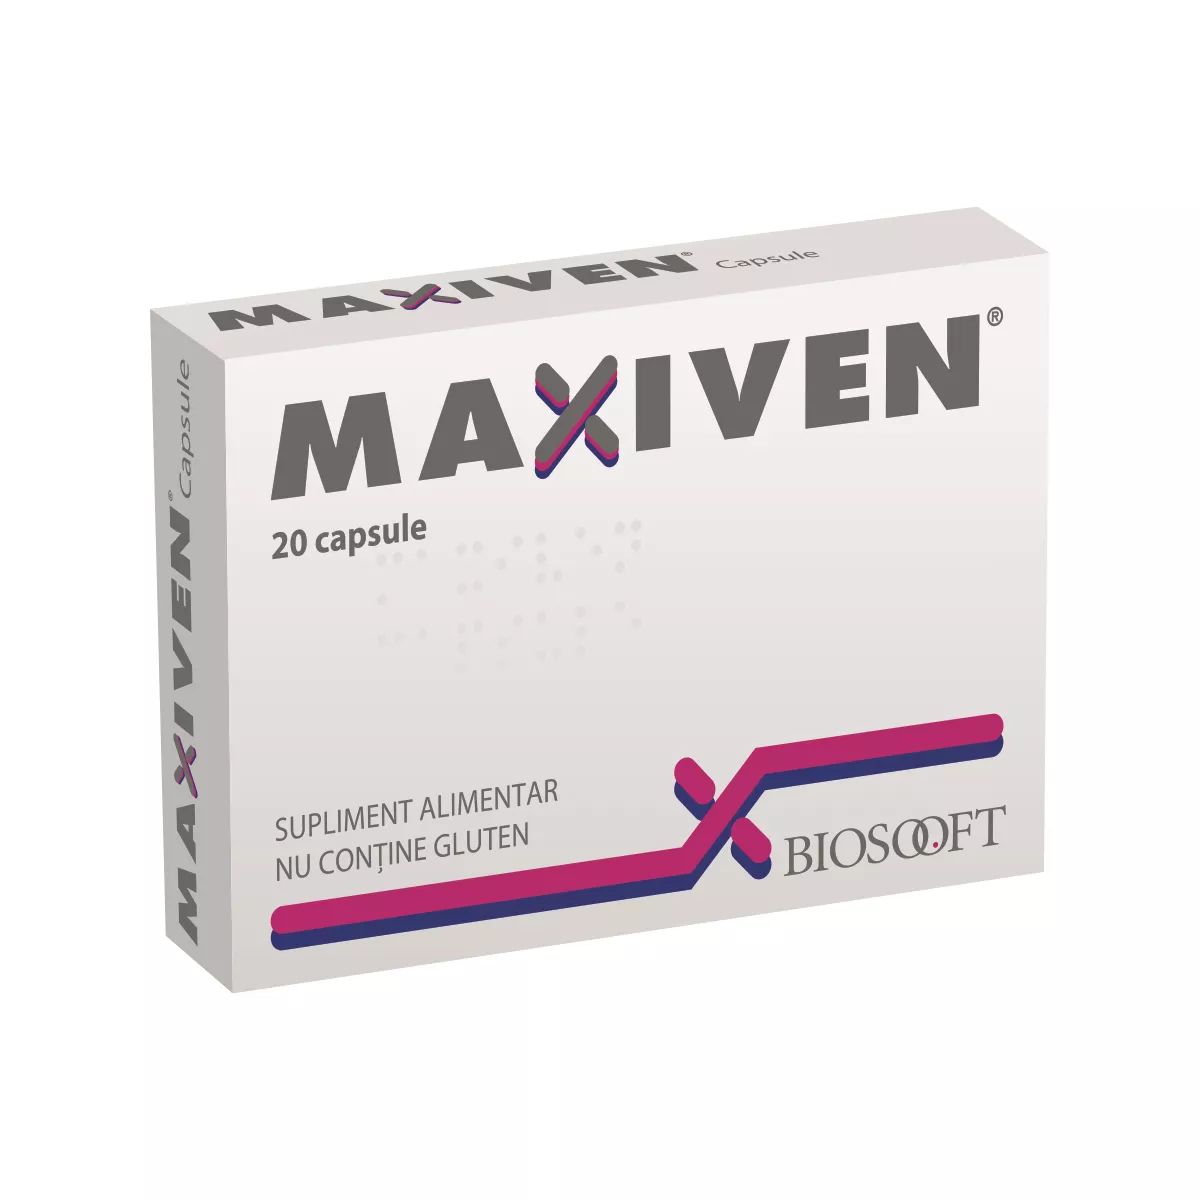 Maxiven, 20 capsule, BioSooft, [],remediumfarm.ro